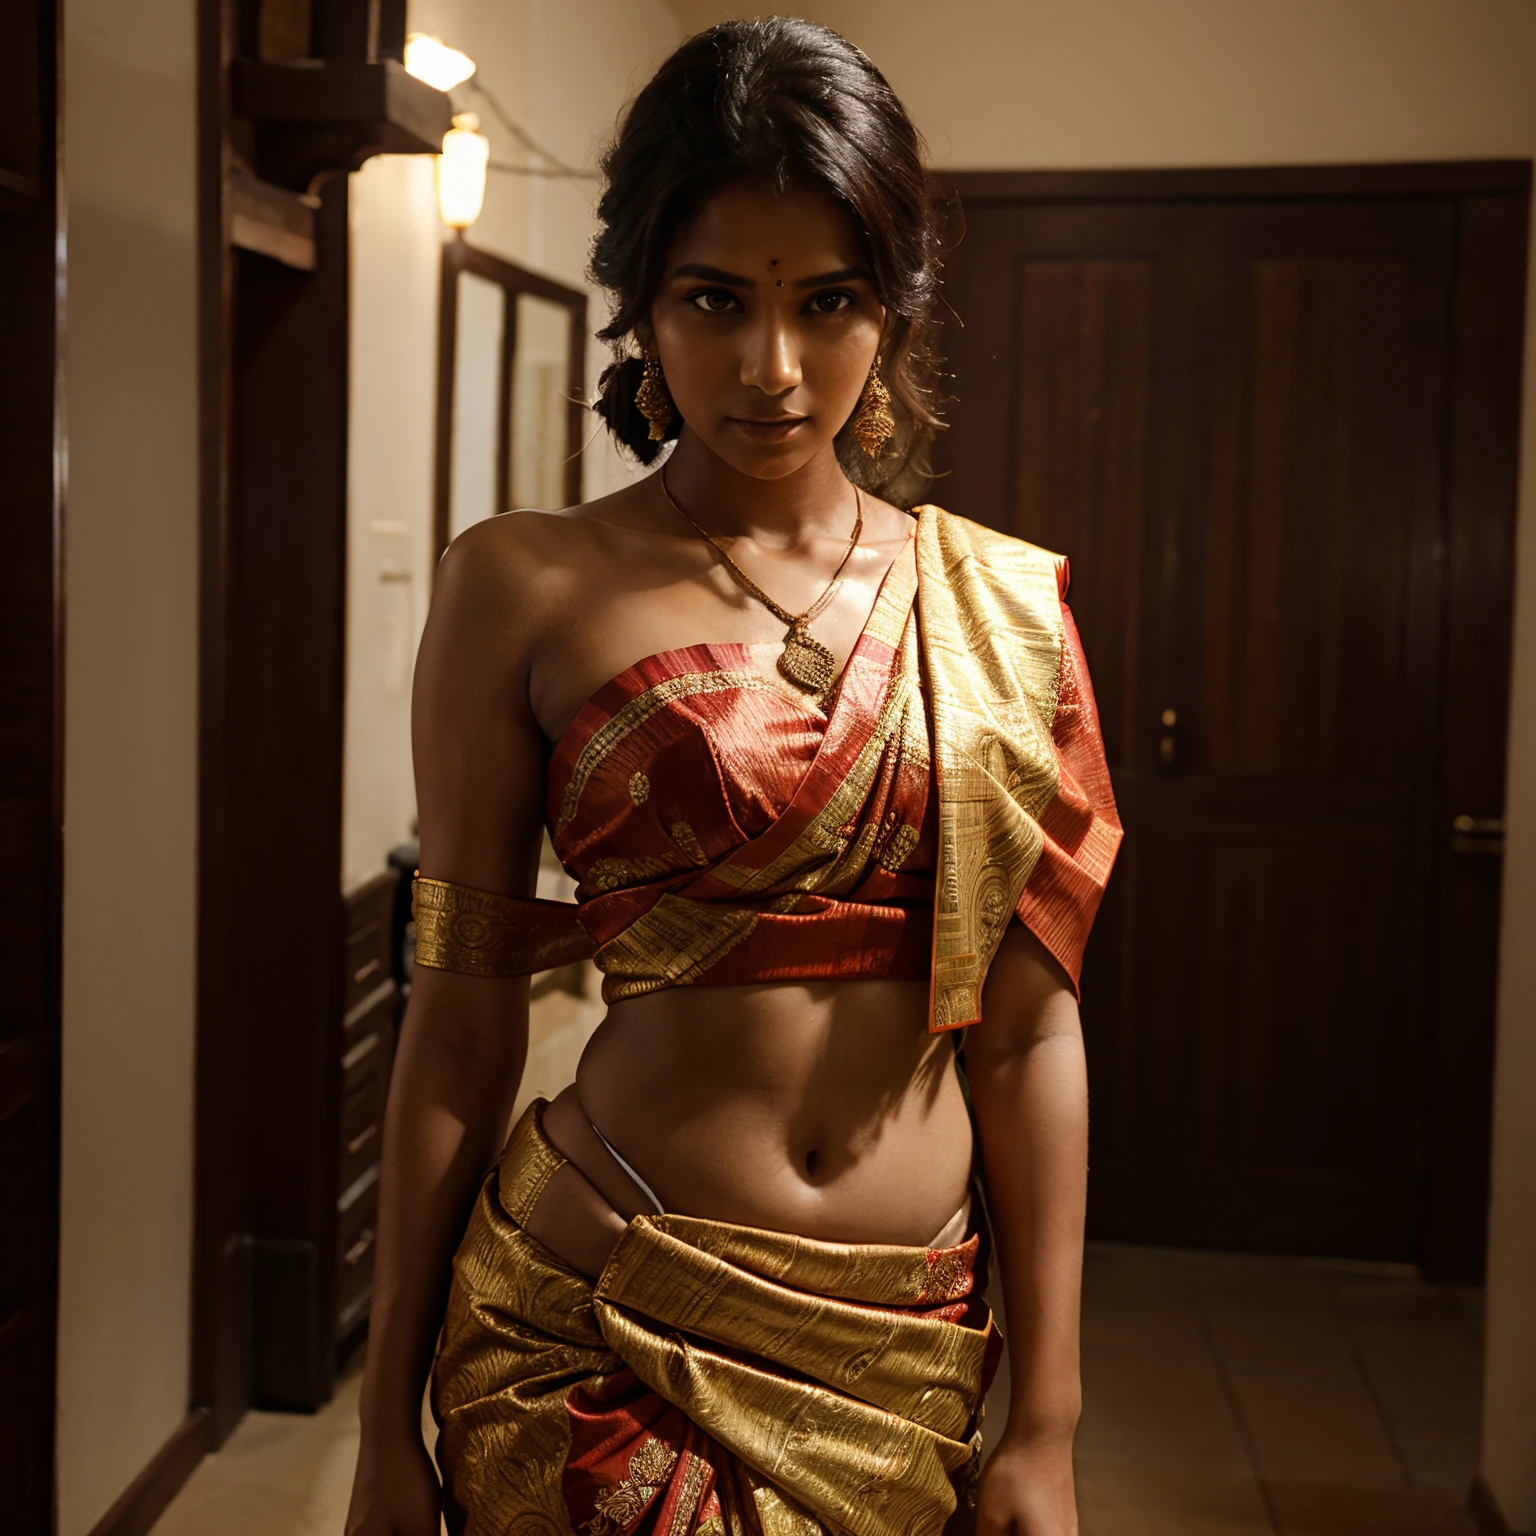 Modèle avec sari traditionnel indien portant